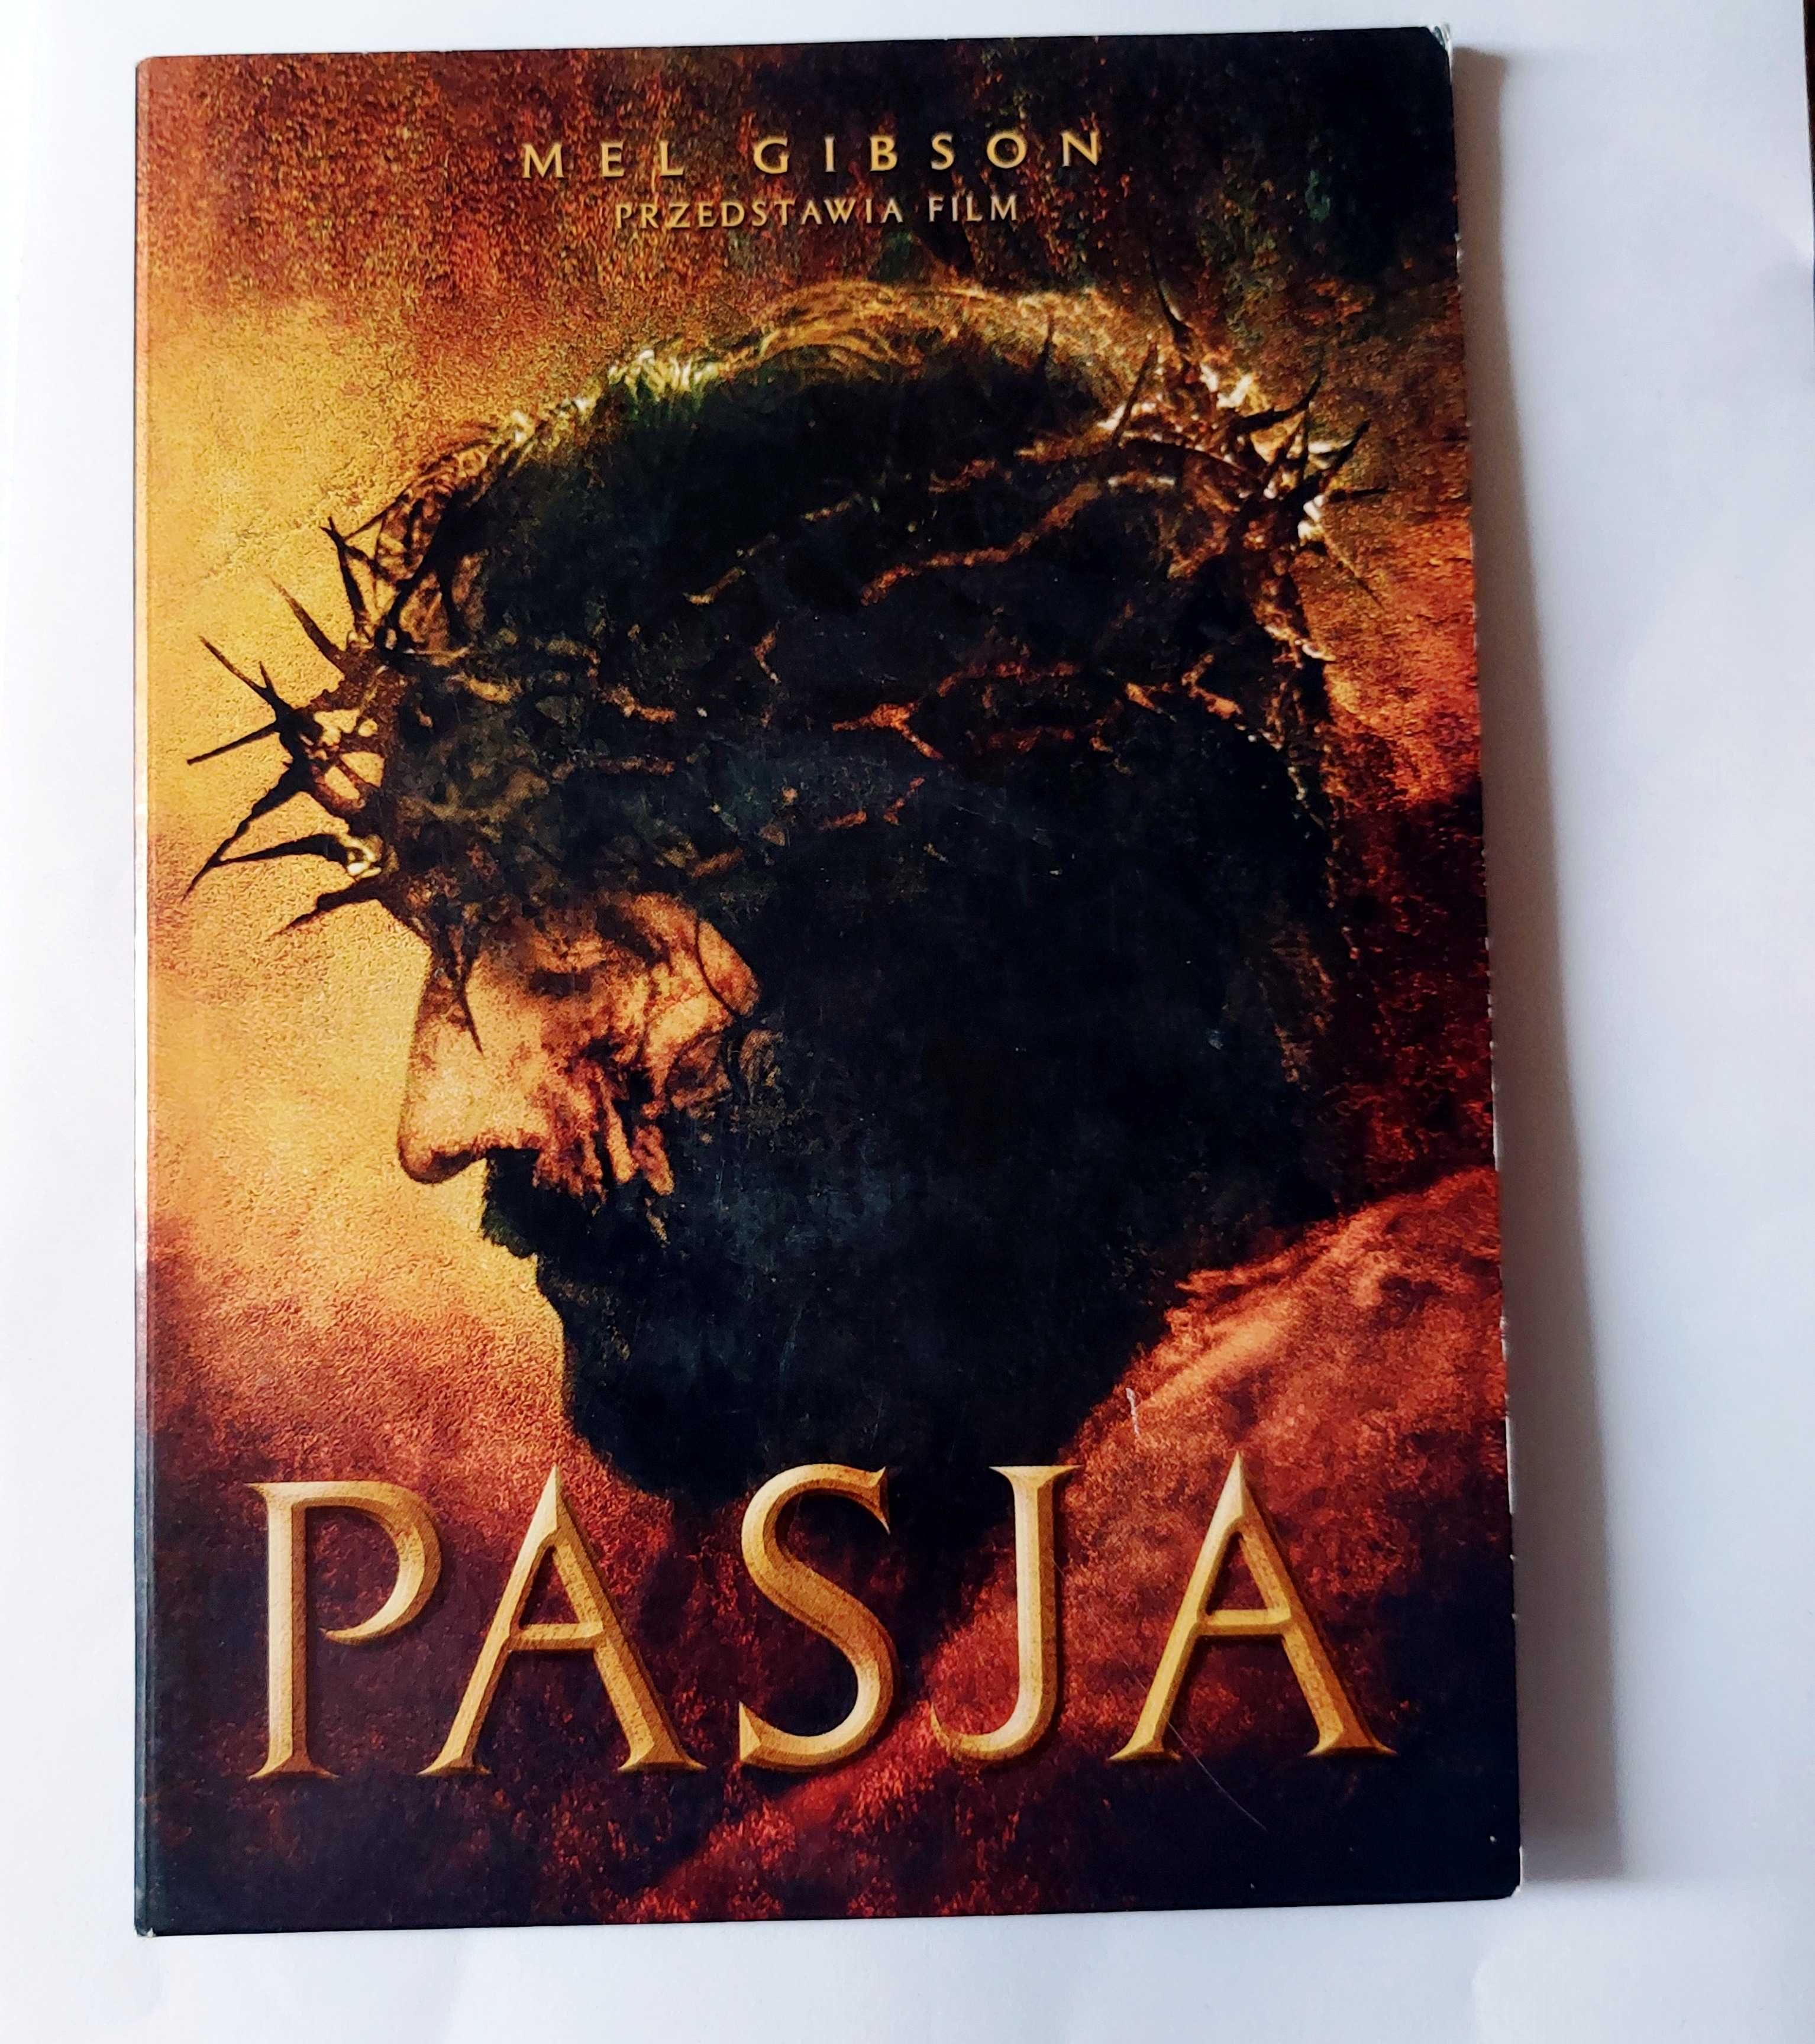 PASJA | Mel Gibson przedstawia film na DVD